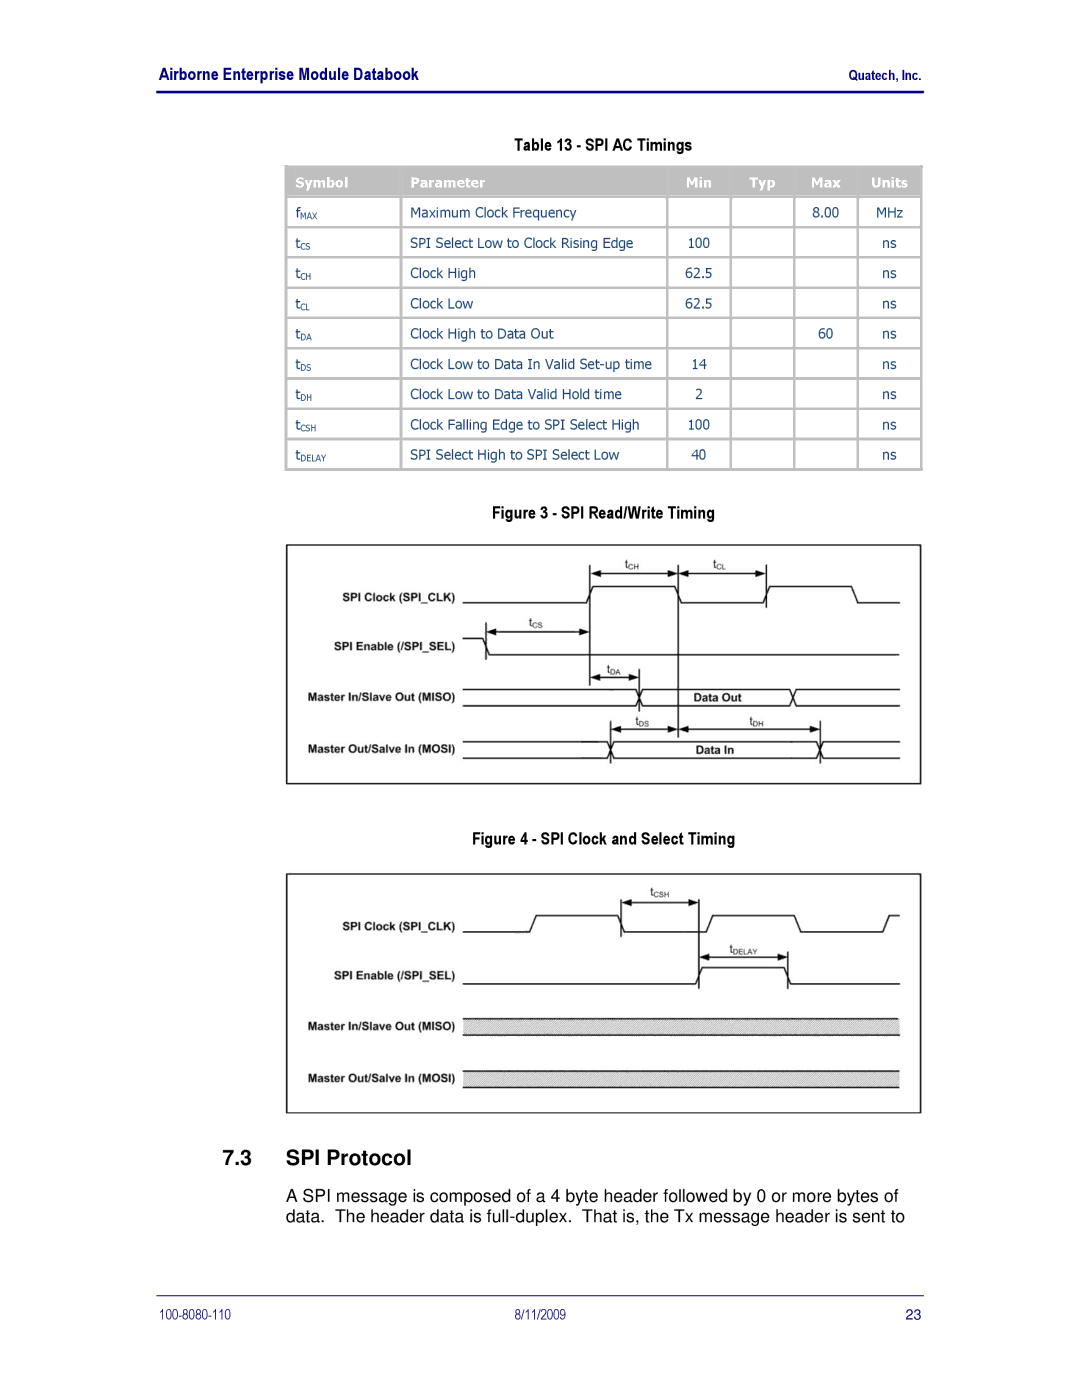 Quatech 802.11B/G manual SPI Protocol, SPI Read/Write Timing 